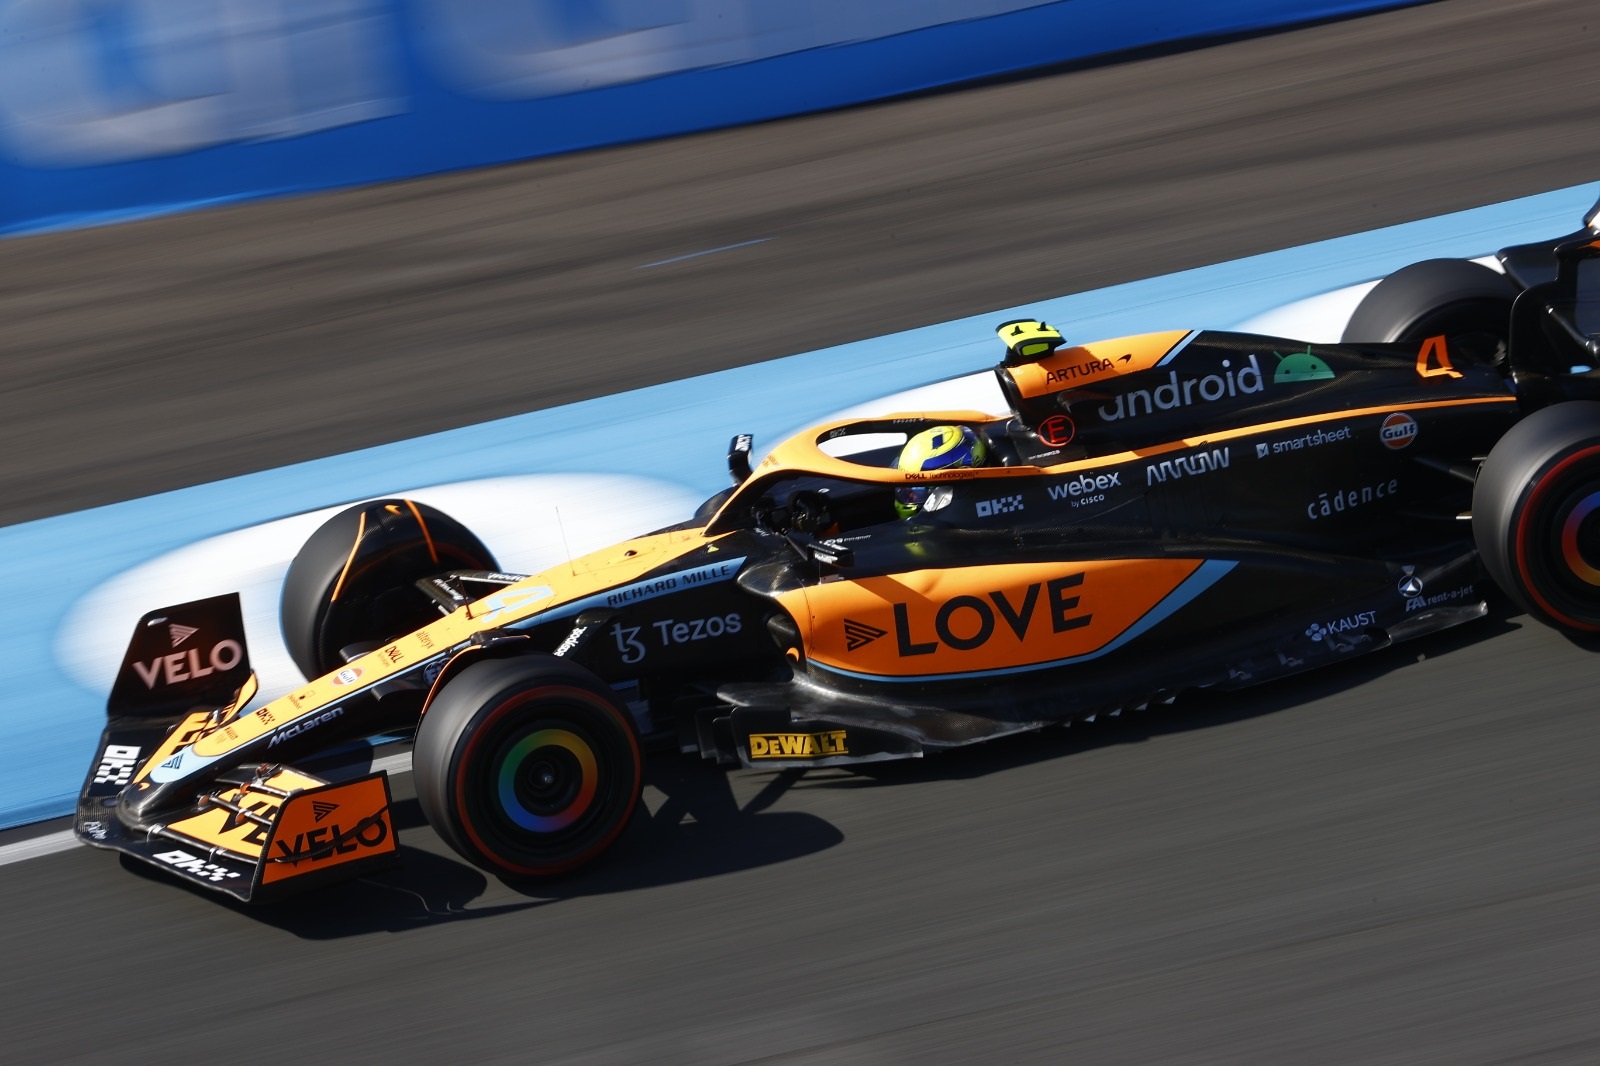 Sábado en los Países Bajos – McLaren: Norris se mete en Q3 y Ricciardo desaparece en Q1